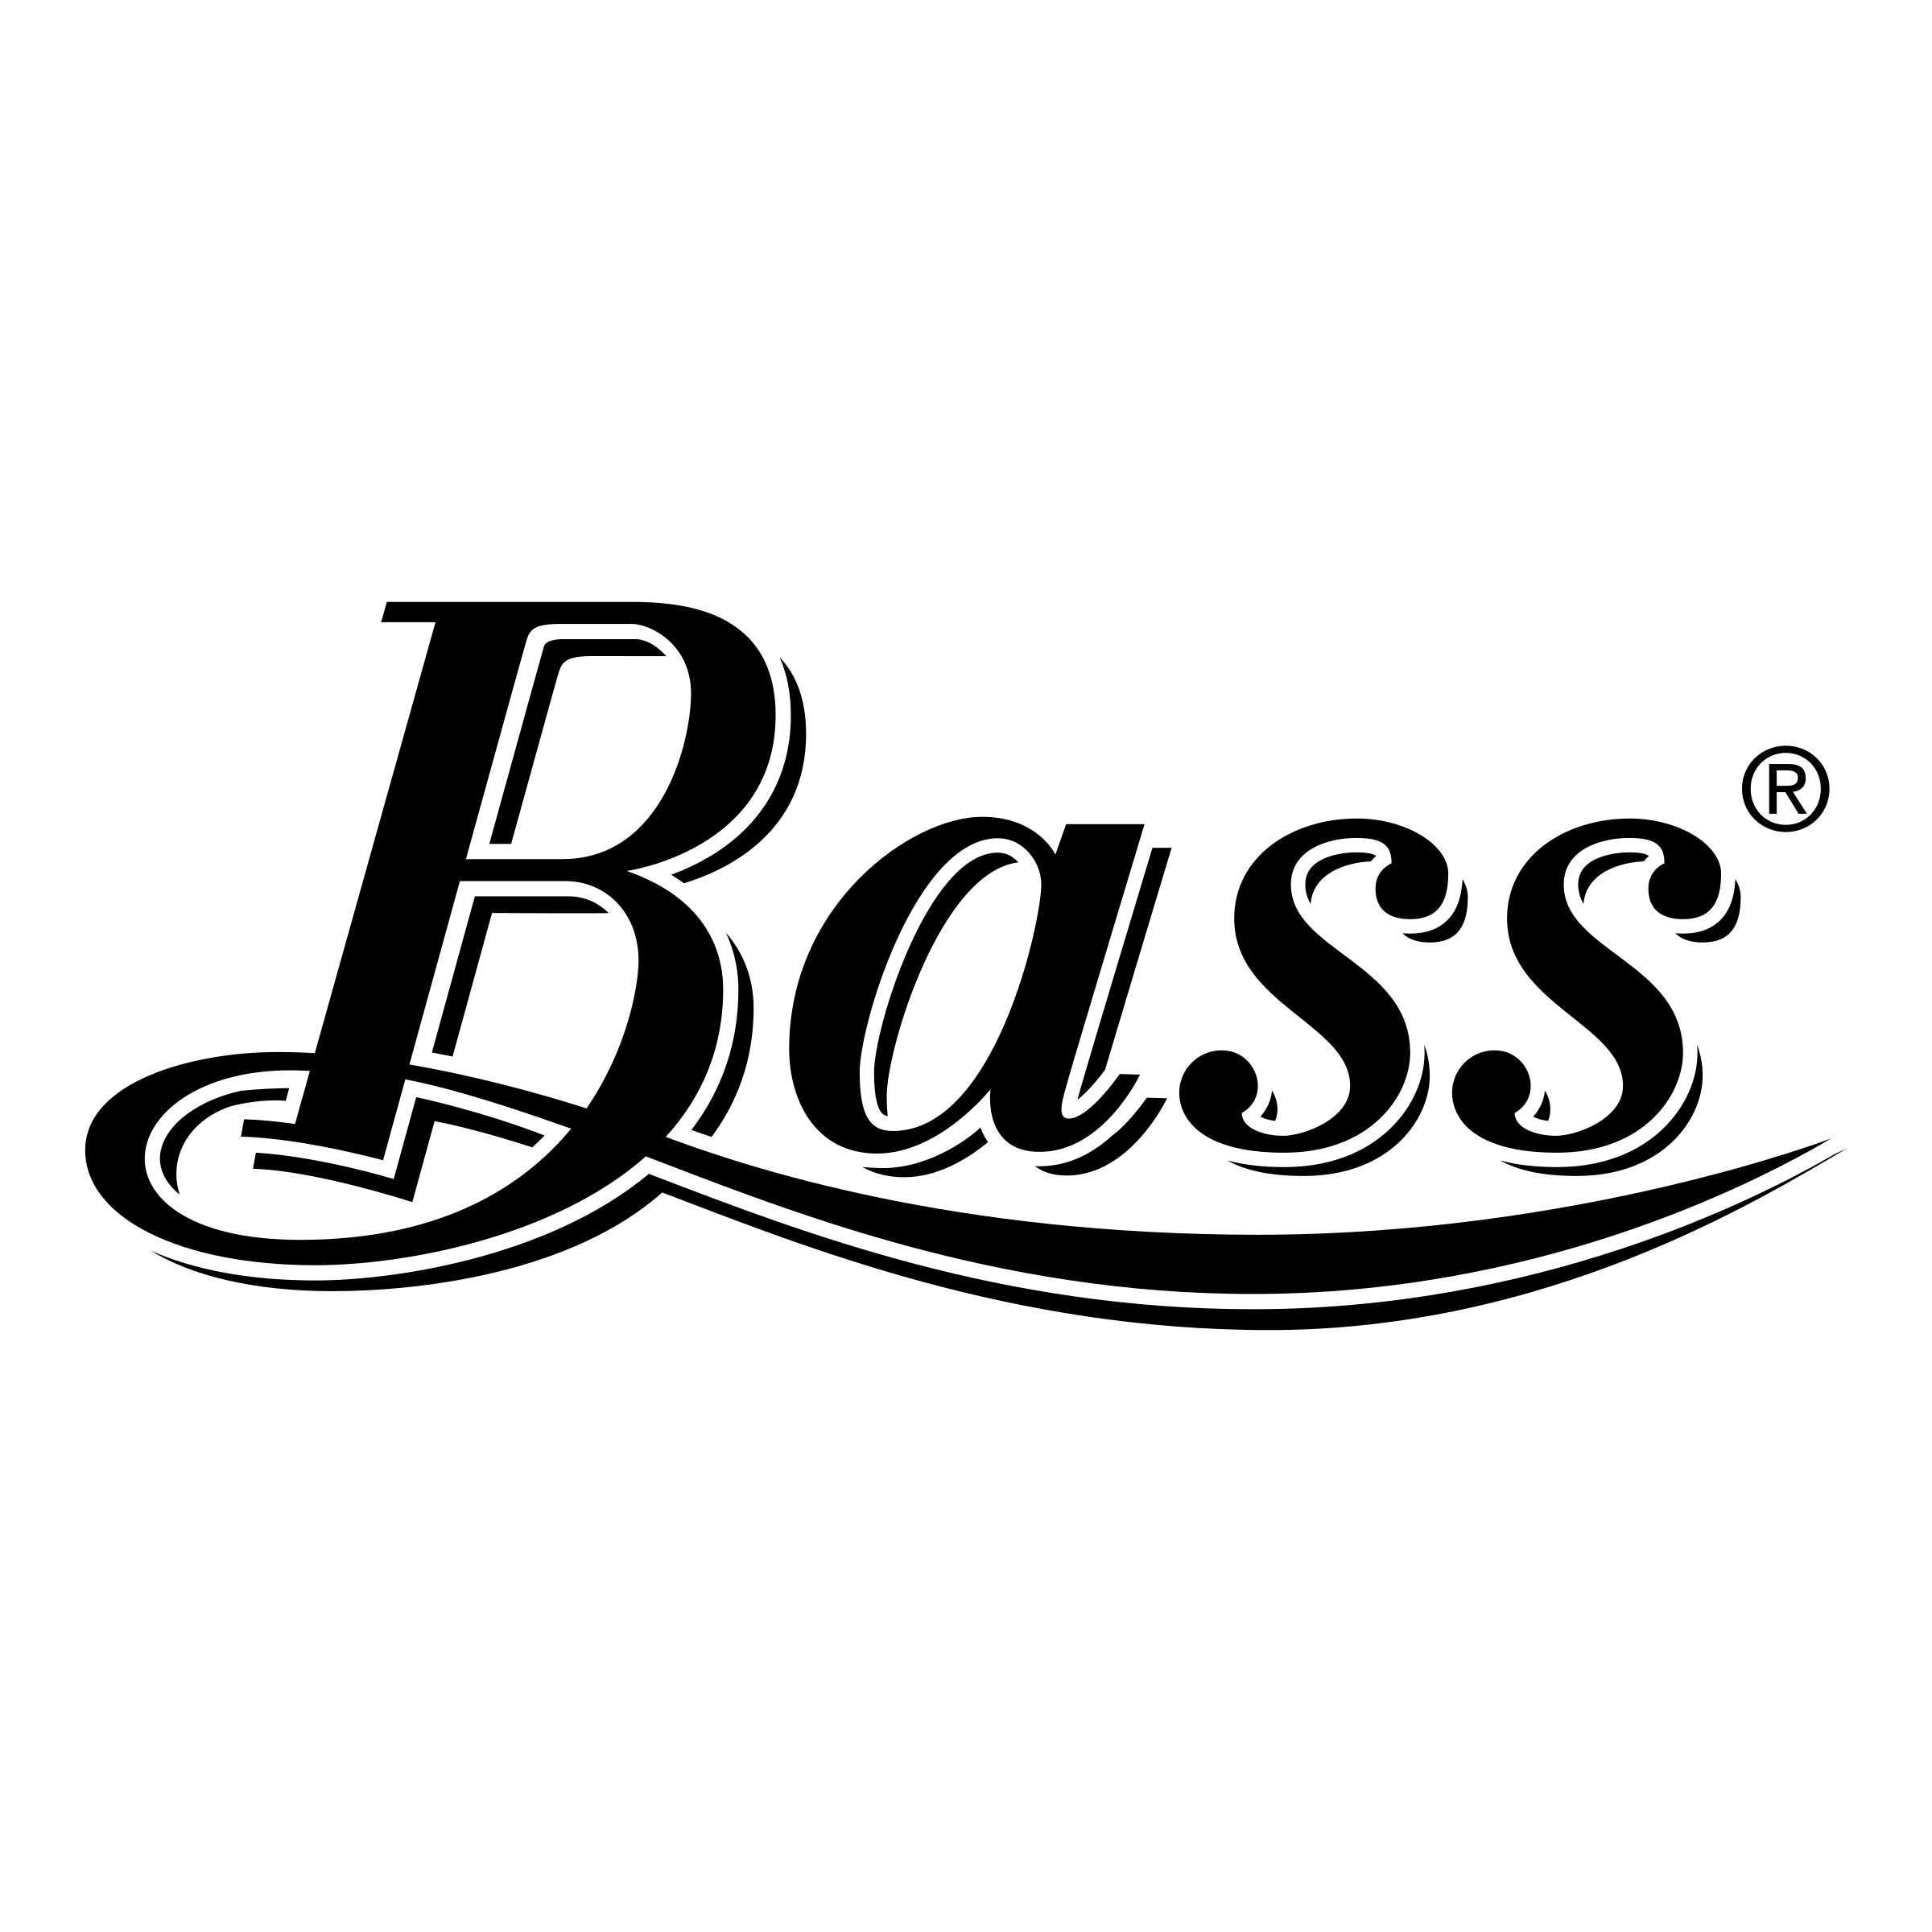 Bass com. Bass надпись. Nadpisj Boss. Bass логотип. Логотип надпись.